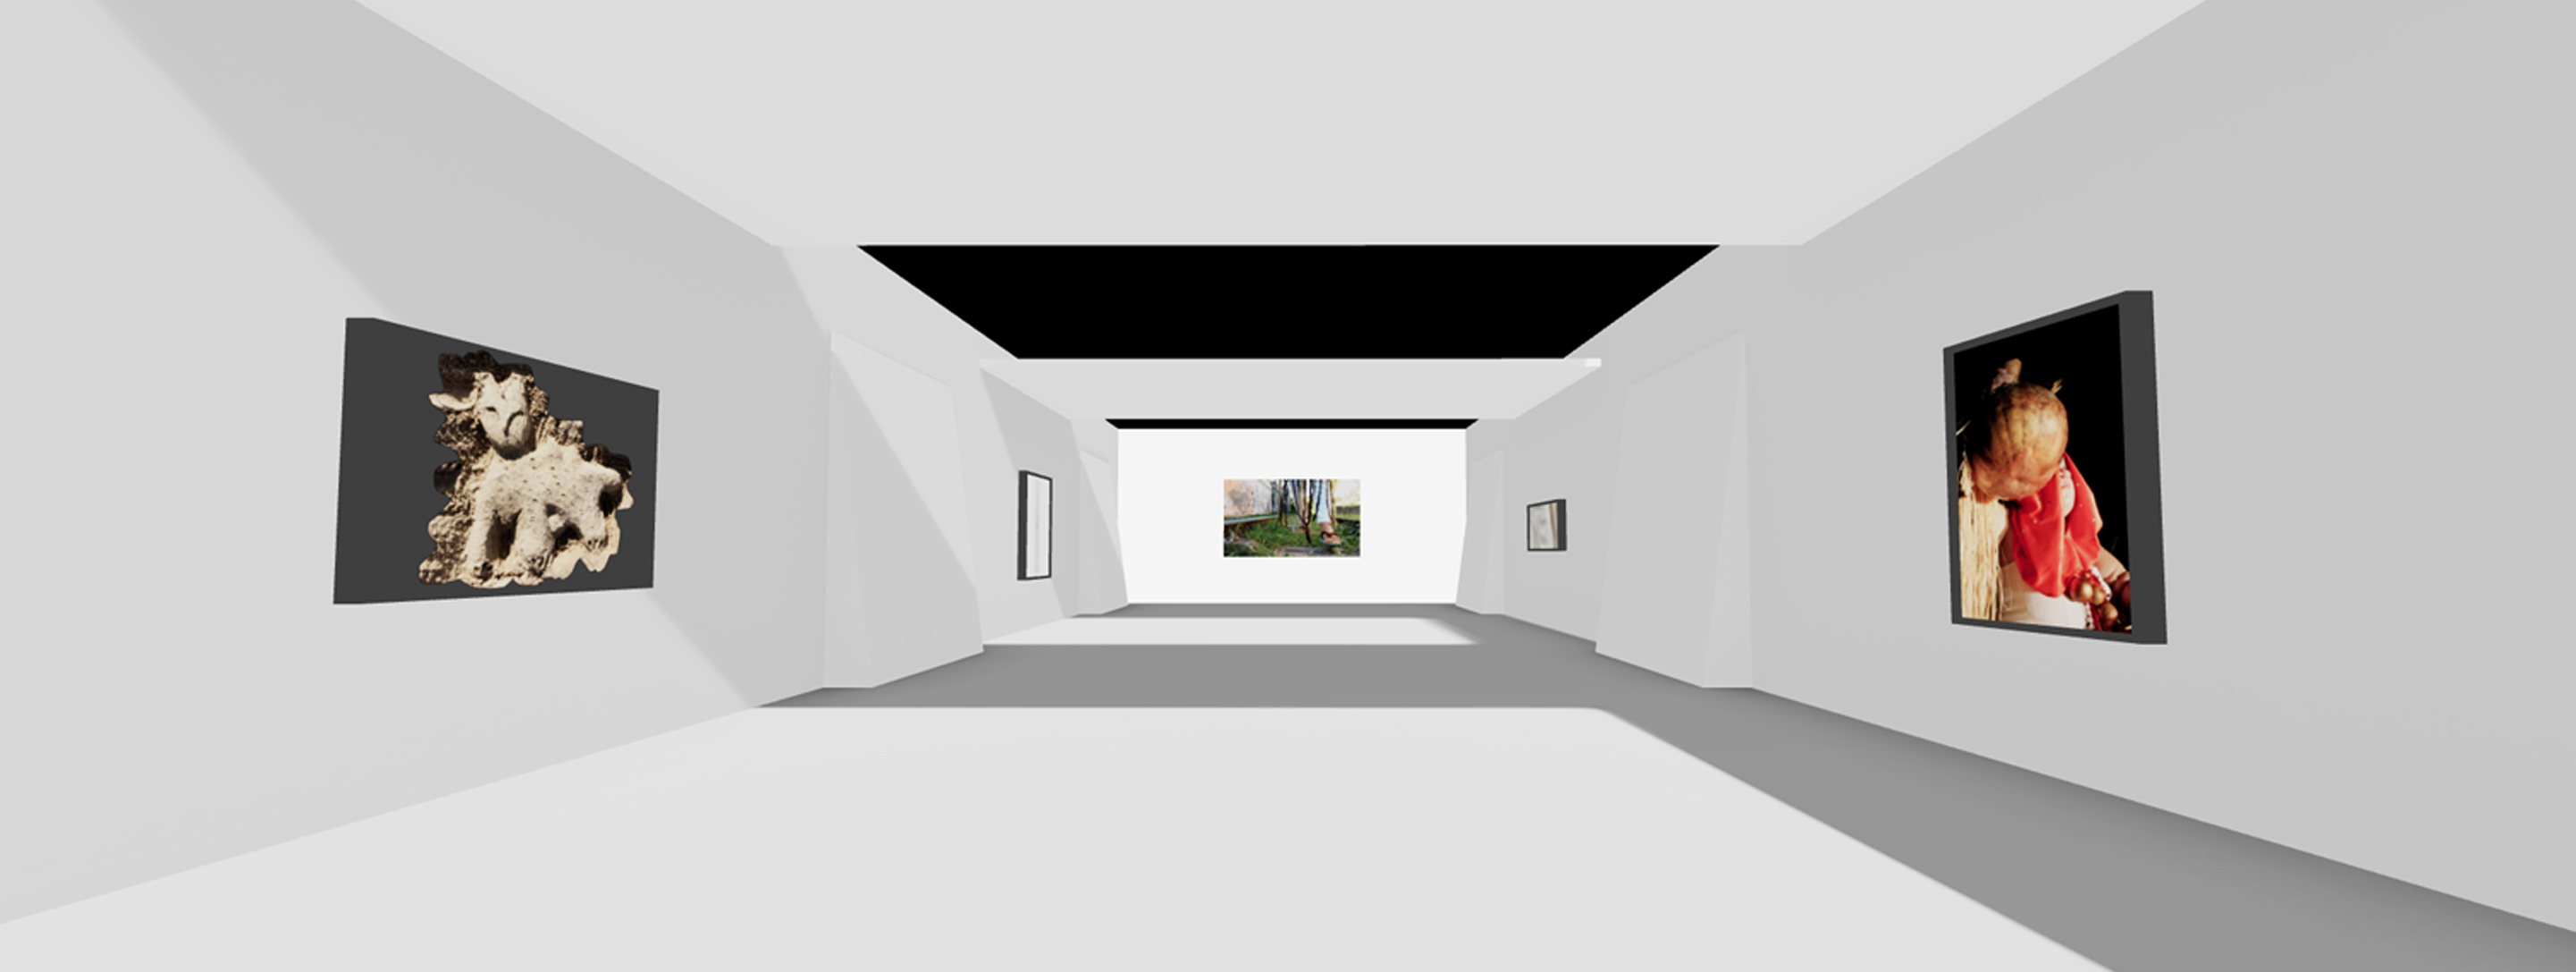 Vista de galeria virtual 3XR